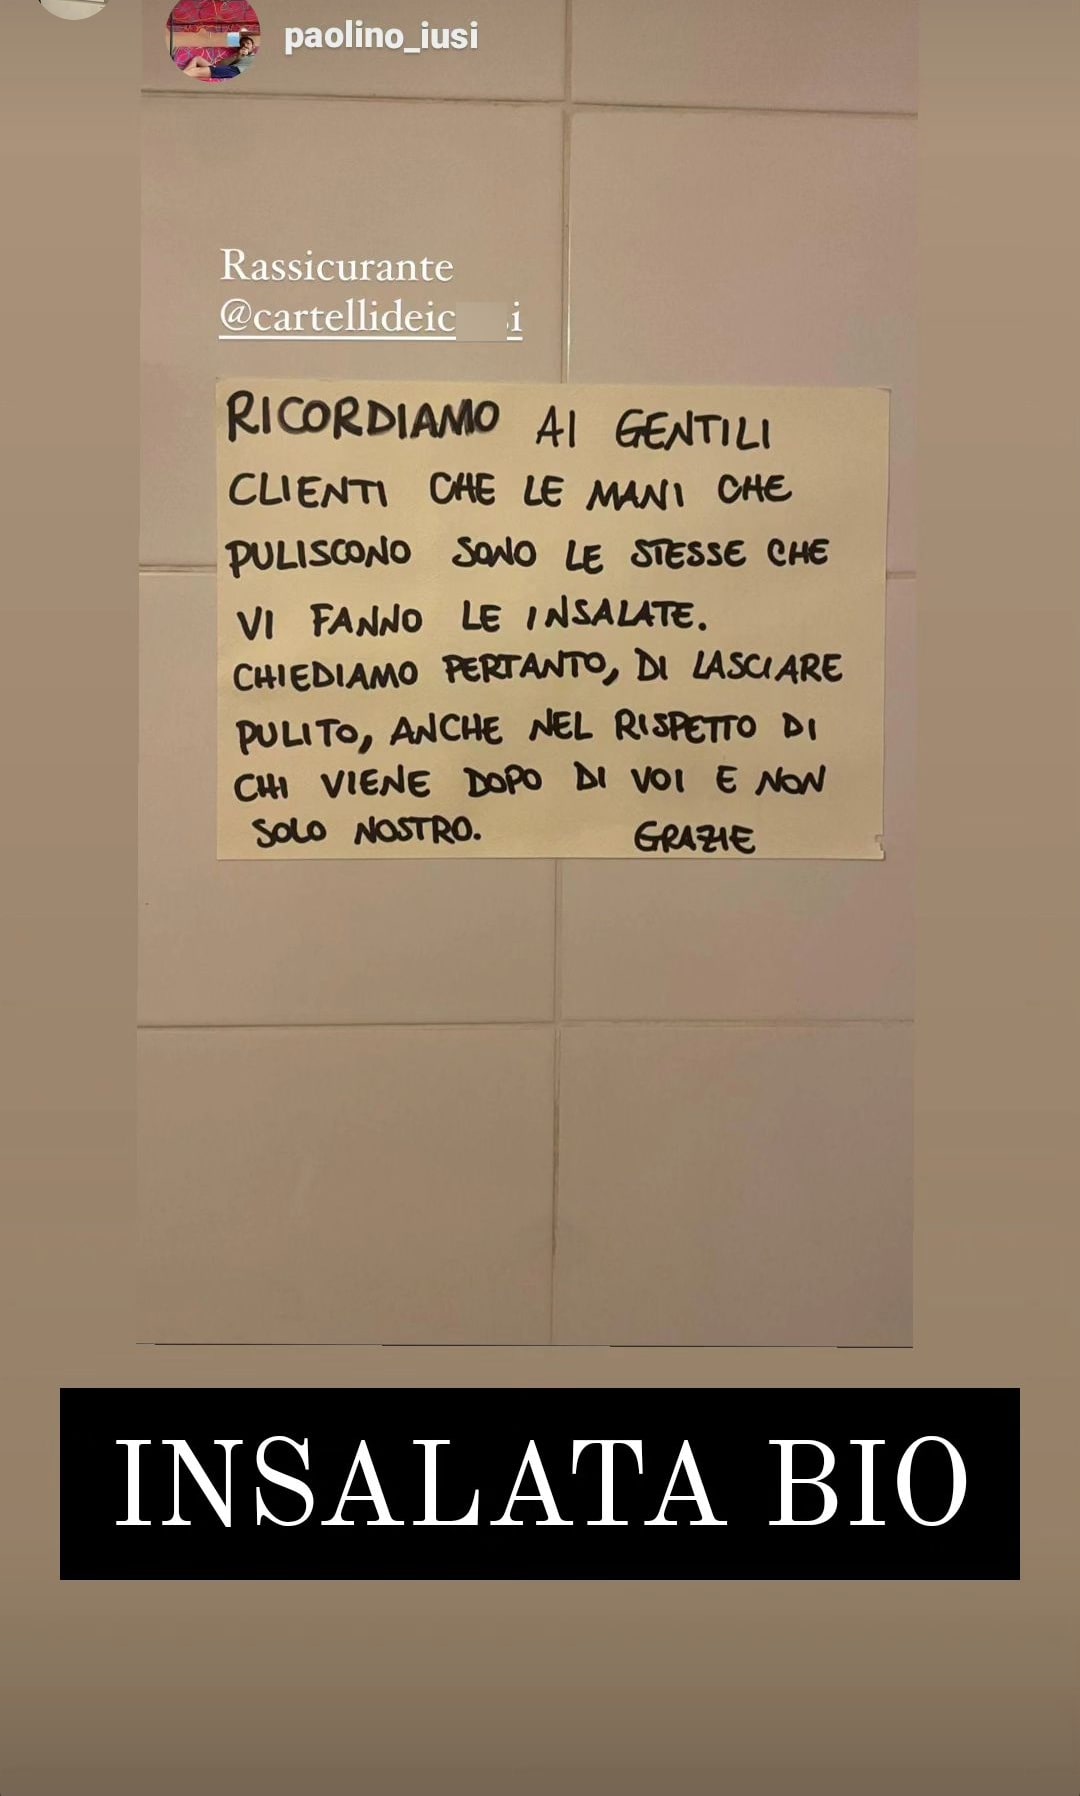 Il cartello 'intimidatorio' comparso nel bagno di un ristorante italiano